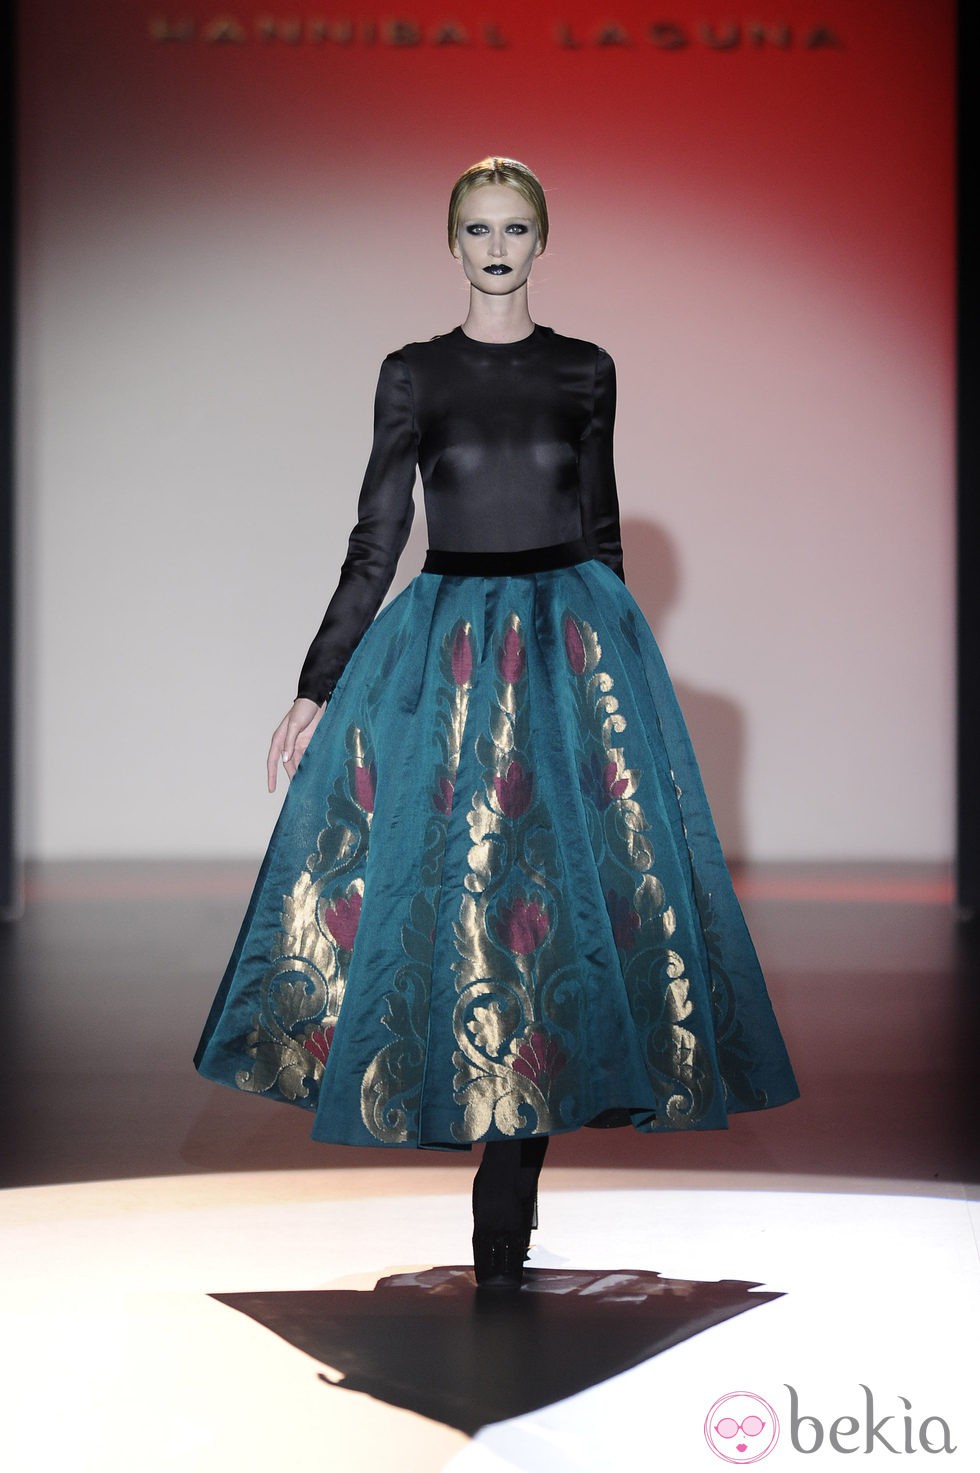 Transparencias y faldas con vuelo para la colección otoño/invierno 2013/2014 de Hannibal Laguna en la Madrid Fashion Week